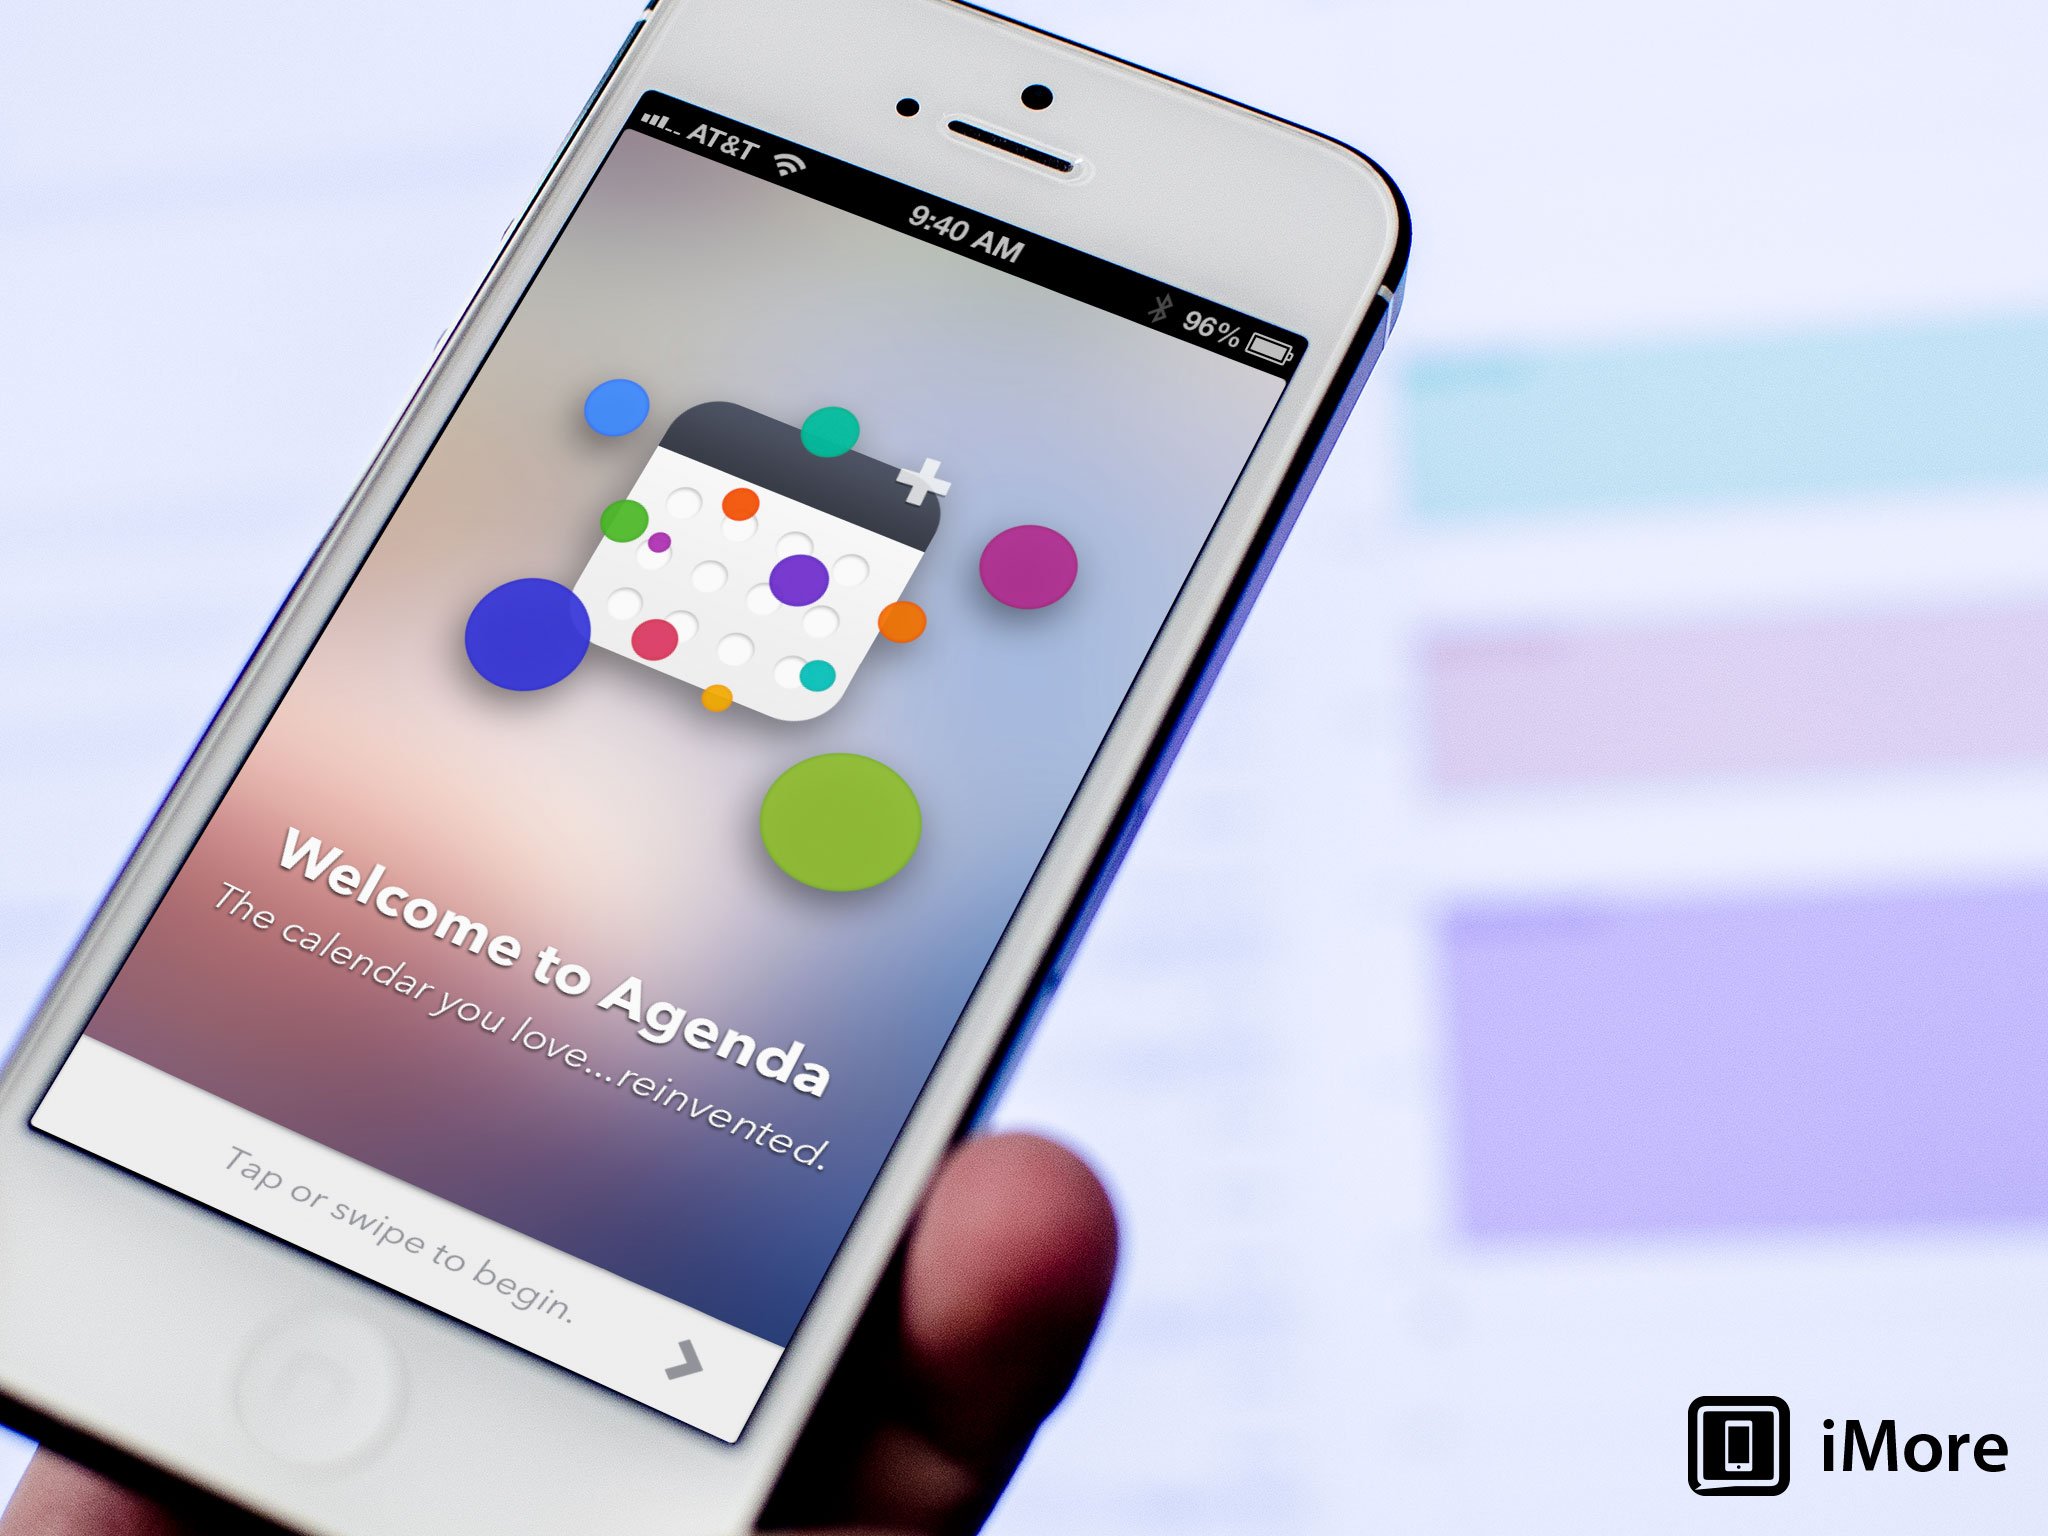 Agenda Calendar 4 for iPhone review: One of the best alternative calendar apps just got better